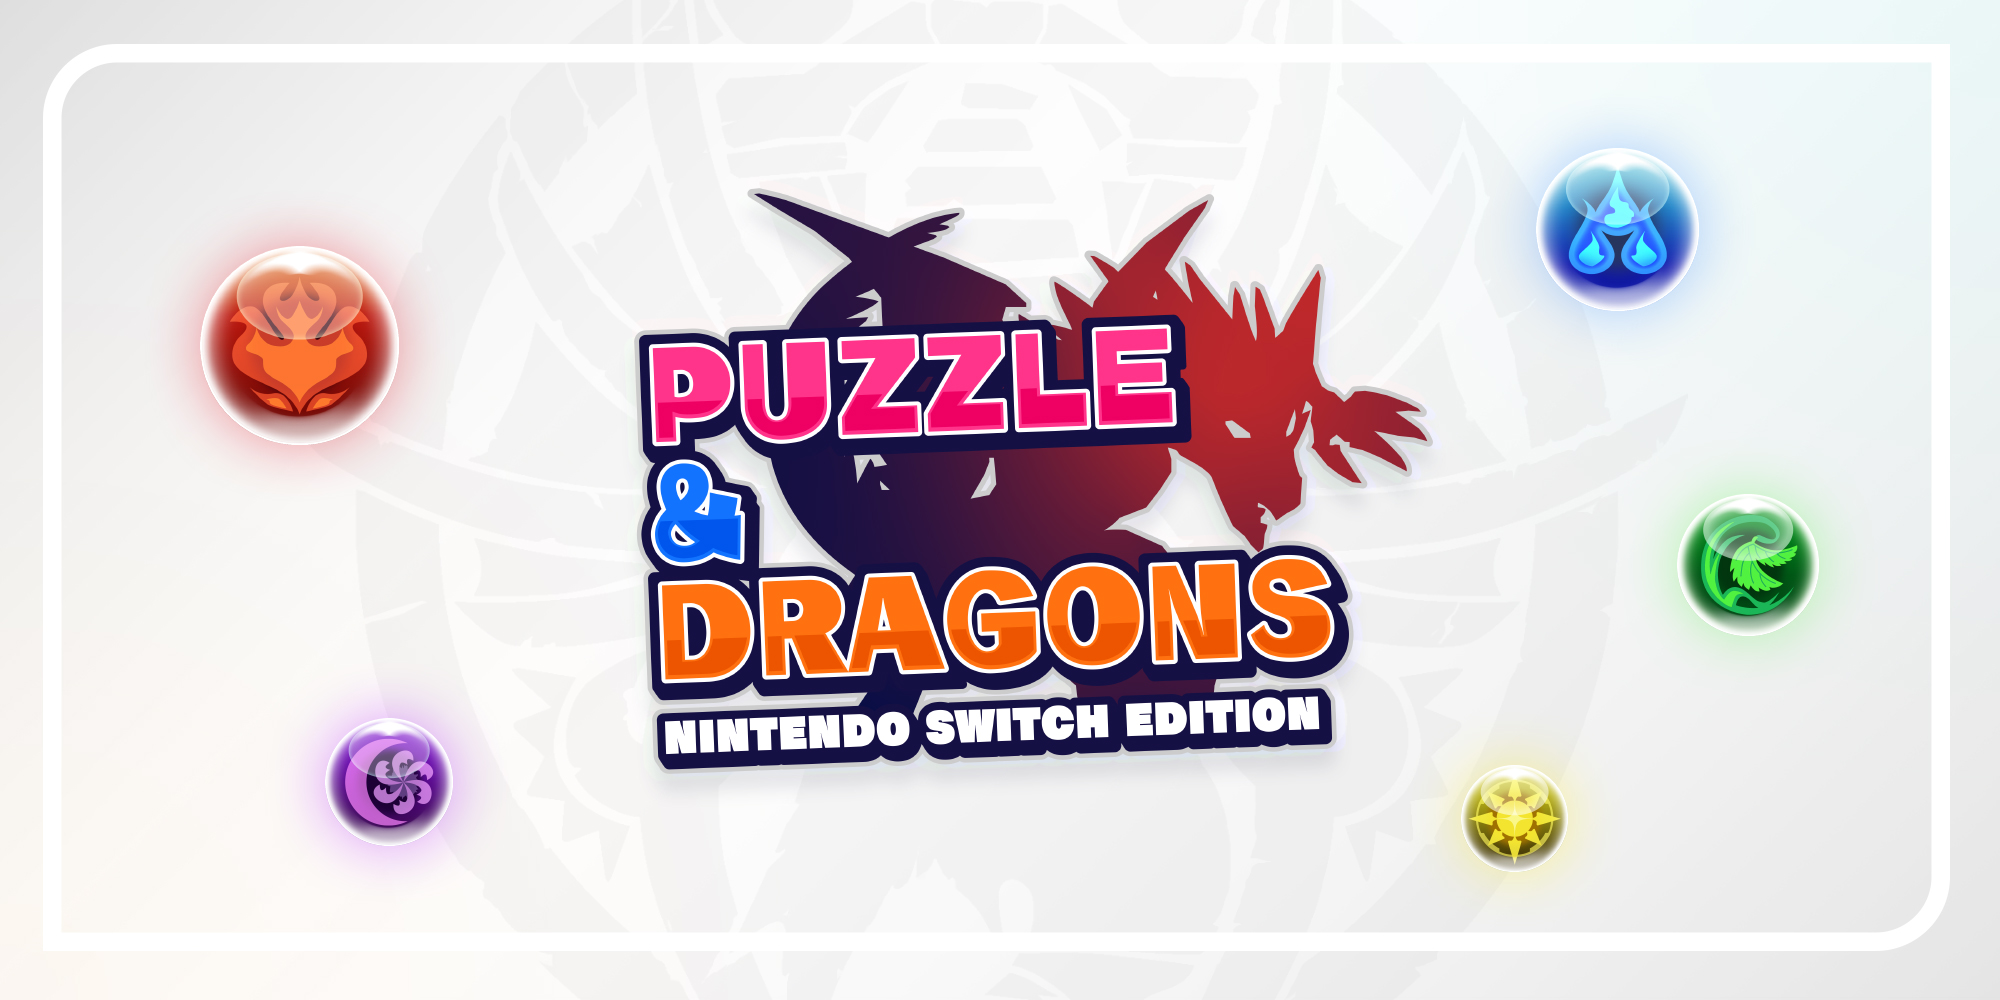 Puzzle 9, Aplicações de download da Nintendo Switch, Jogos